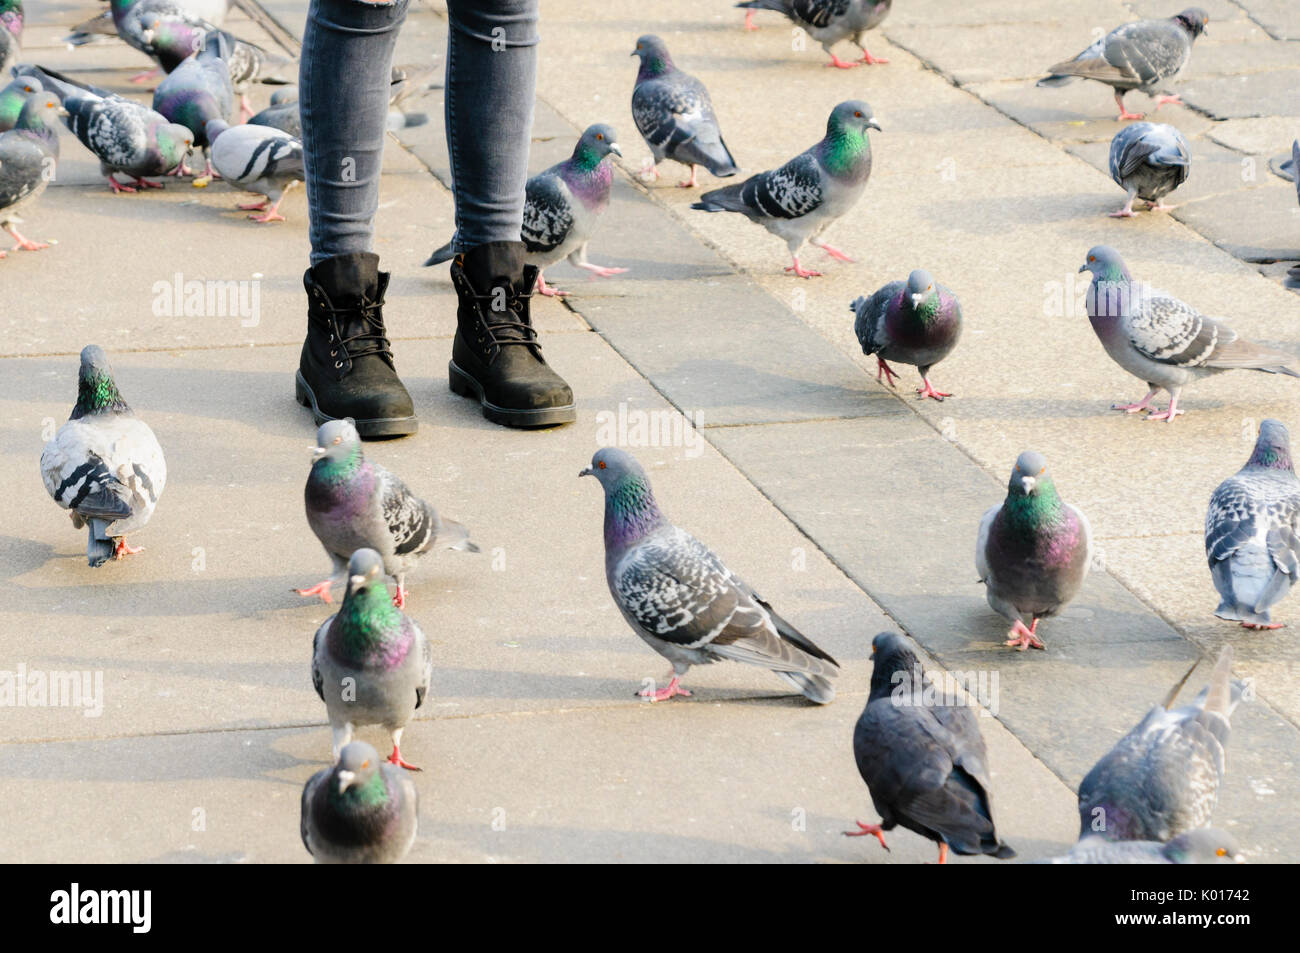 Une femme se tient sur un sentier avec les pigeons à ses pieds Banque D'Images